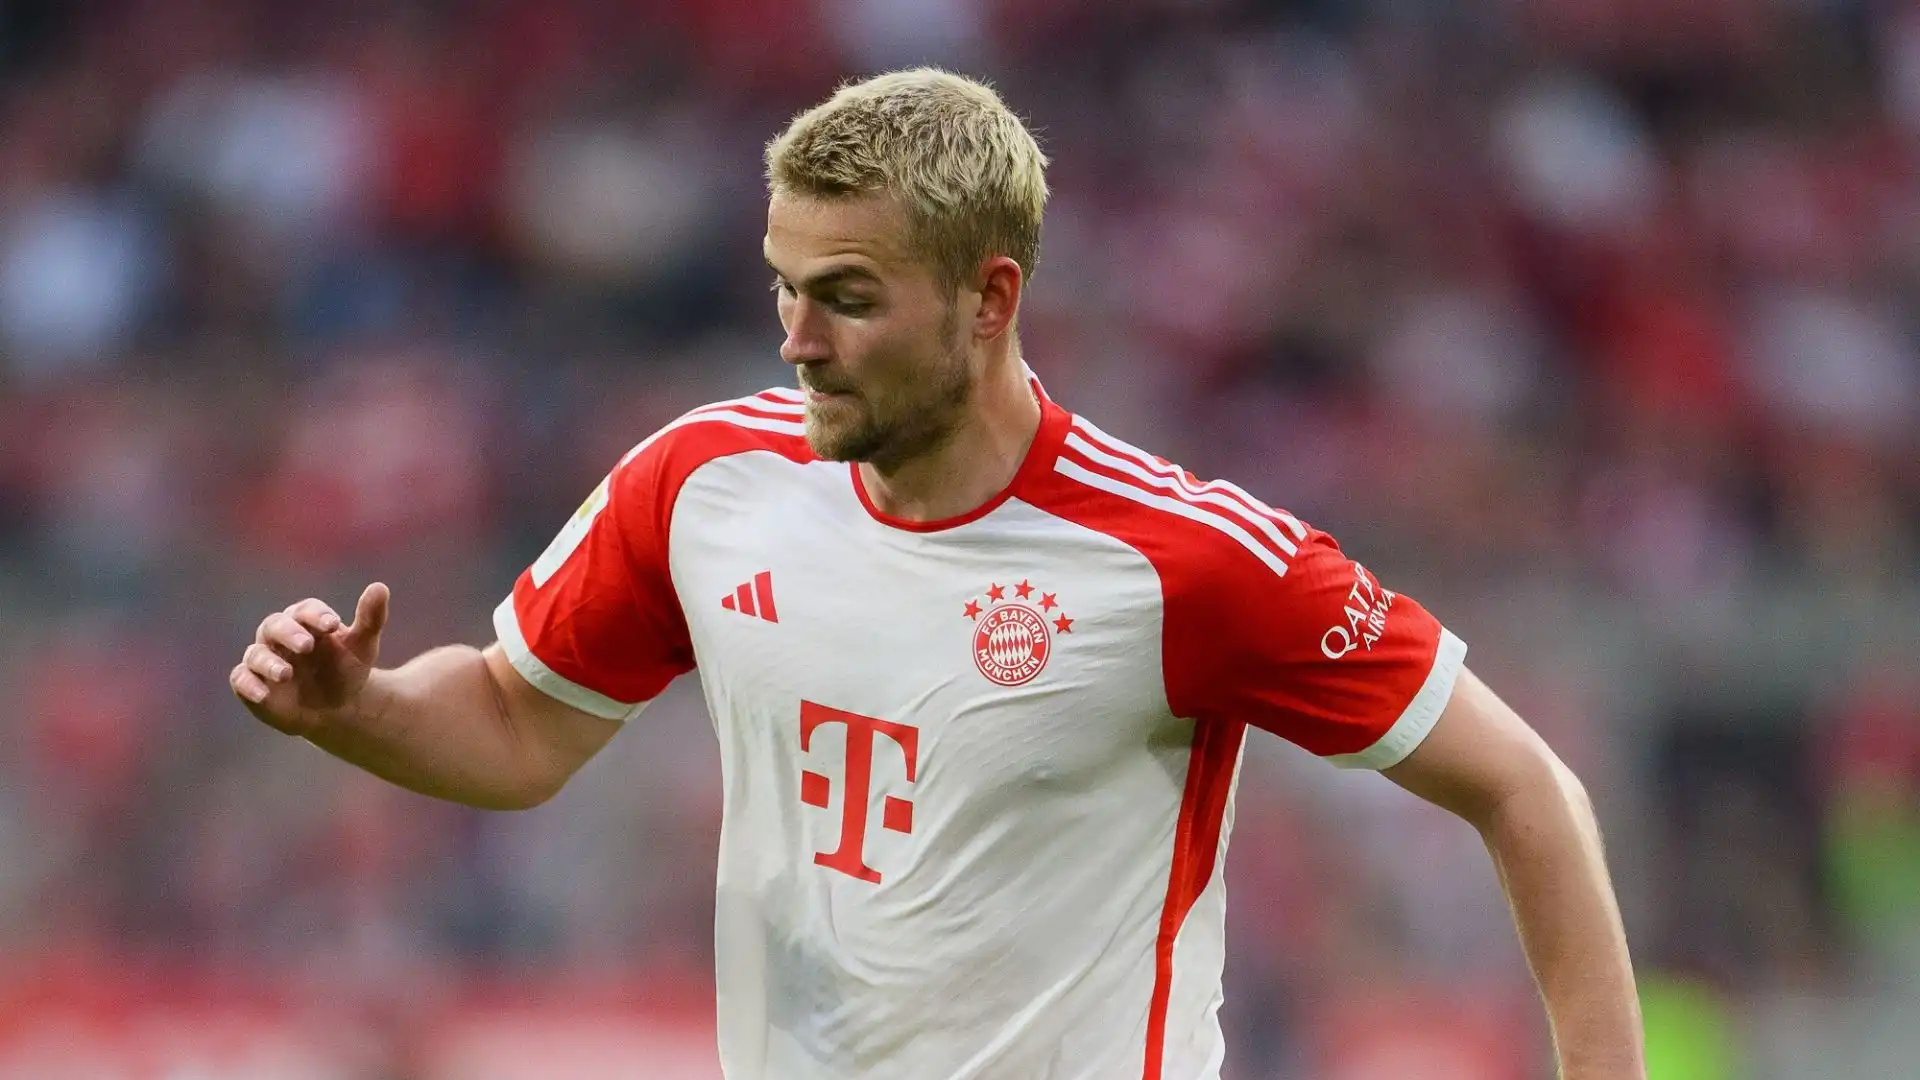 Forse troppo poco per il Bayern, che chiede almeno 65 milioni di euro per la cessione del giocatore